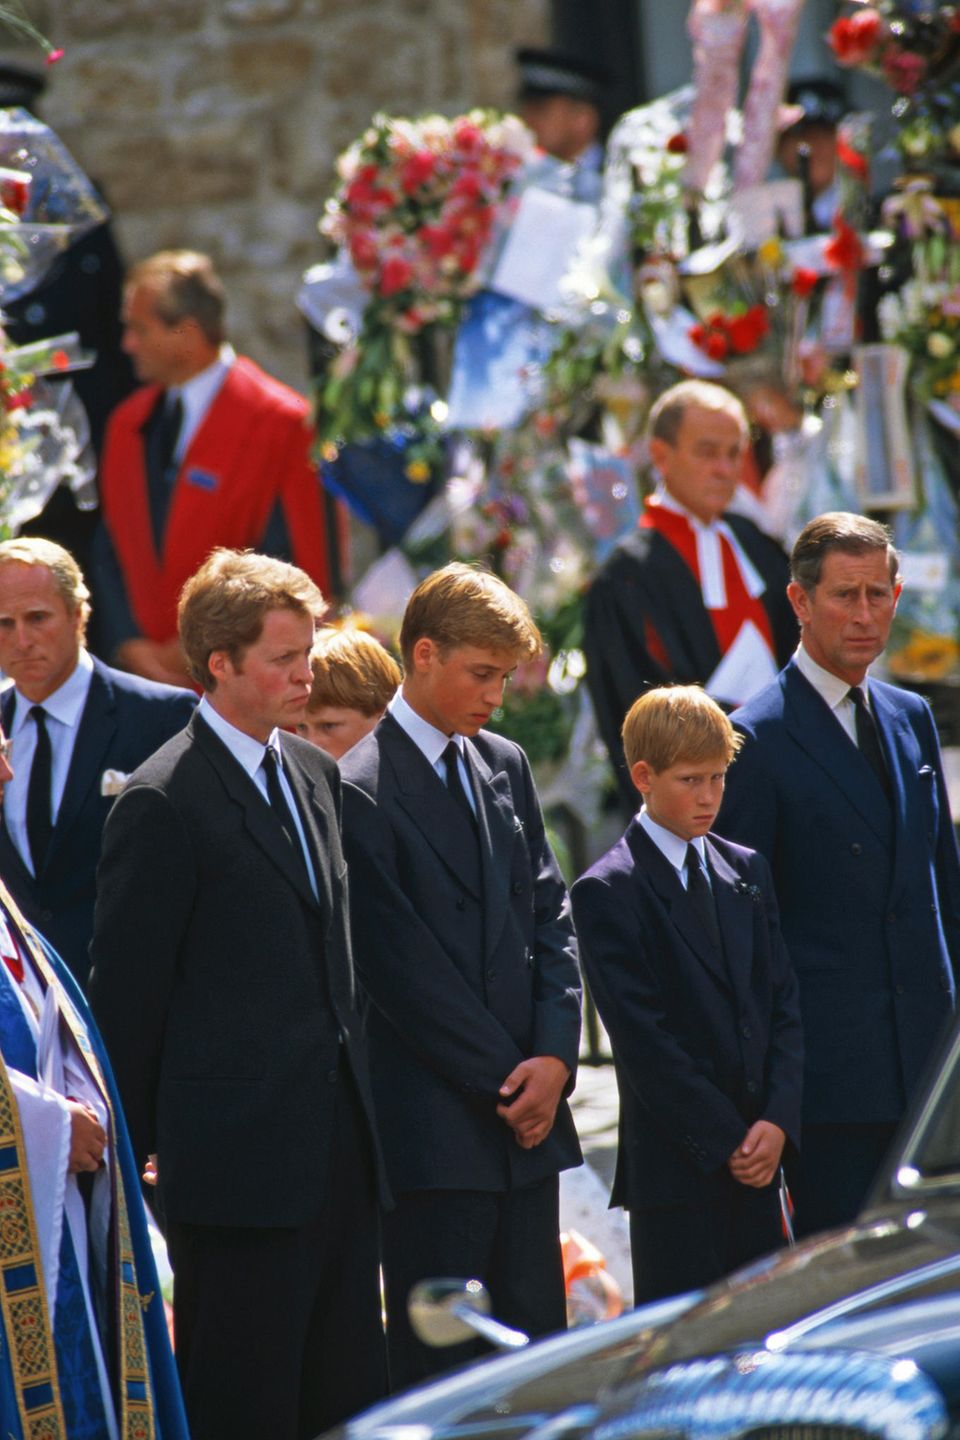 Ein Foto, das Herzen auf der ganzen Welt bricht: Prinz William und Prinz Harry stehen, flankiert von ihrem Onkel Charles Earl Spencer und ihrem Vater Prinz Charles, vor dem Sarg ihrer Mutter Prinzessin Diana. 